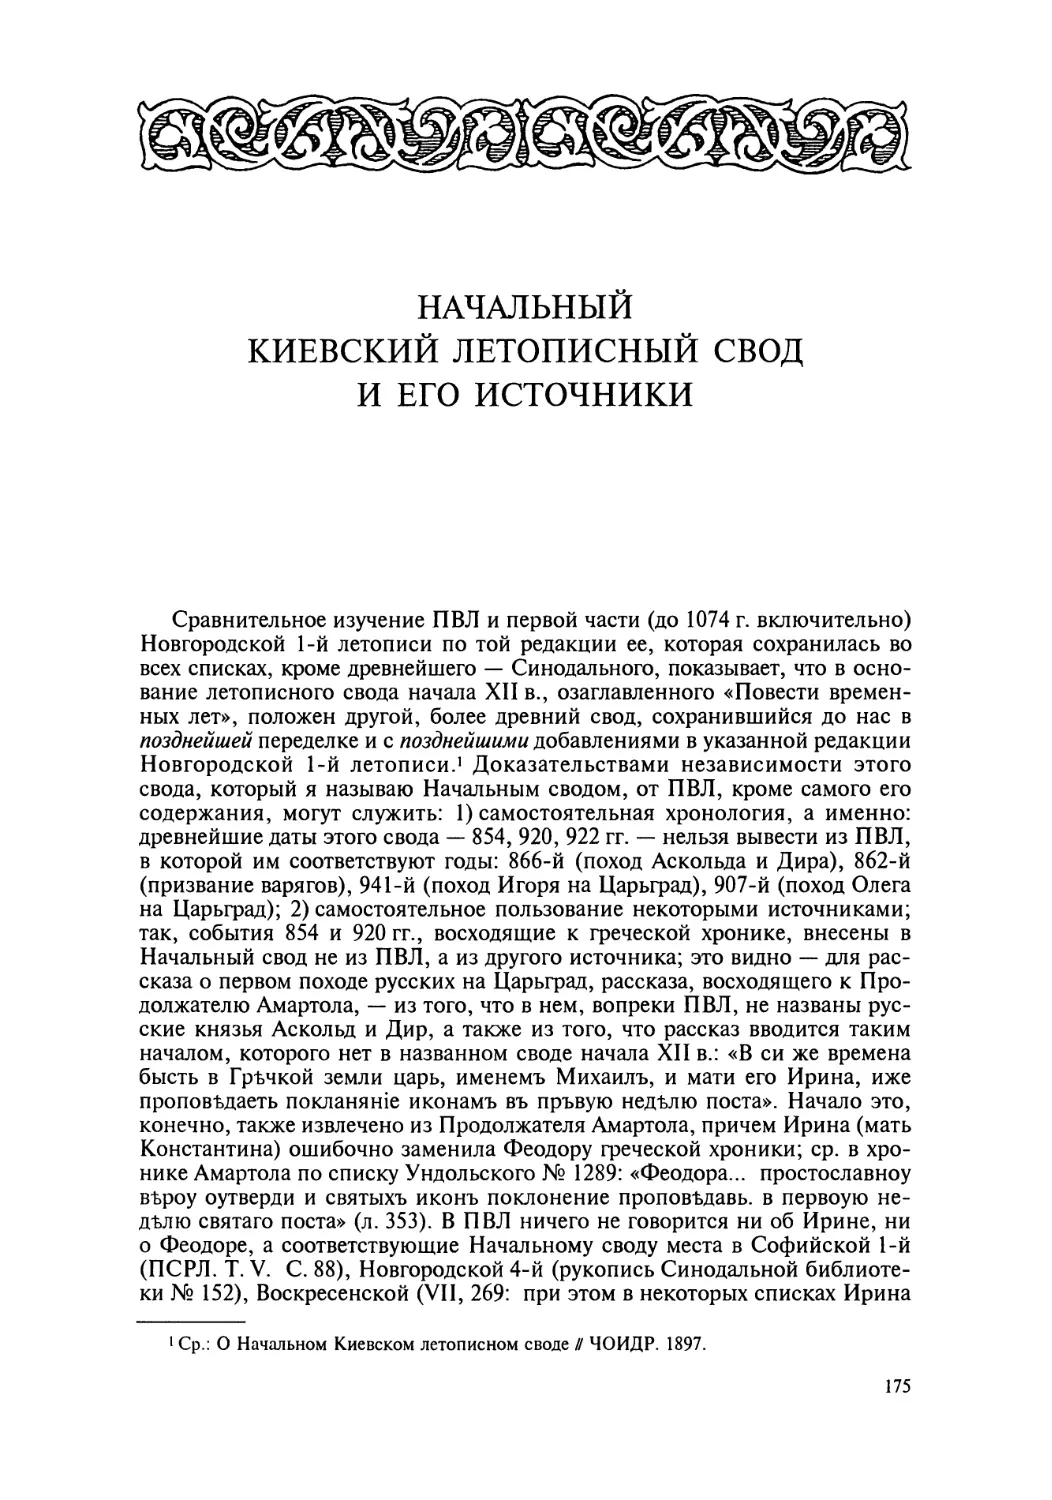 Начальный Киевский летописный свод и его источники